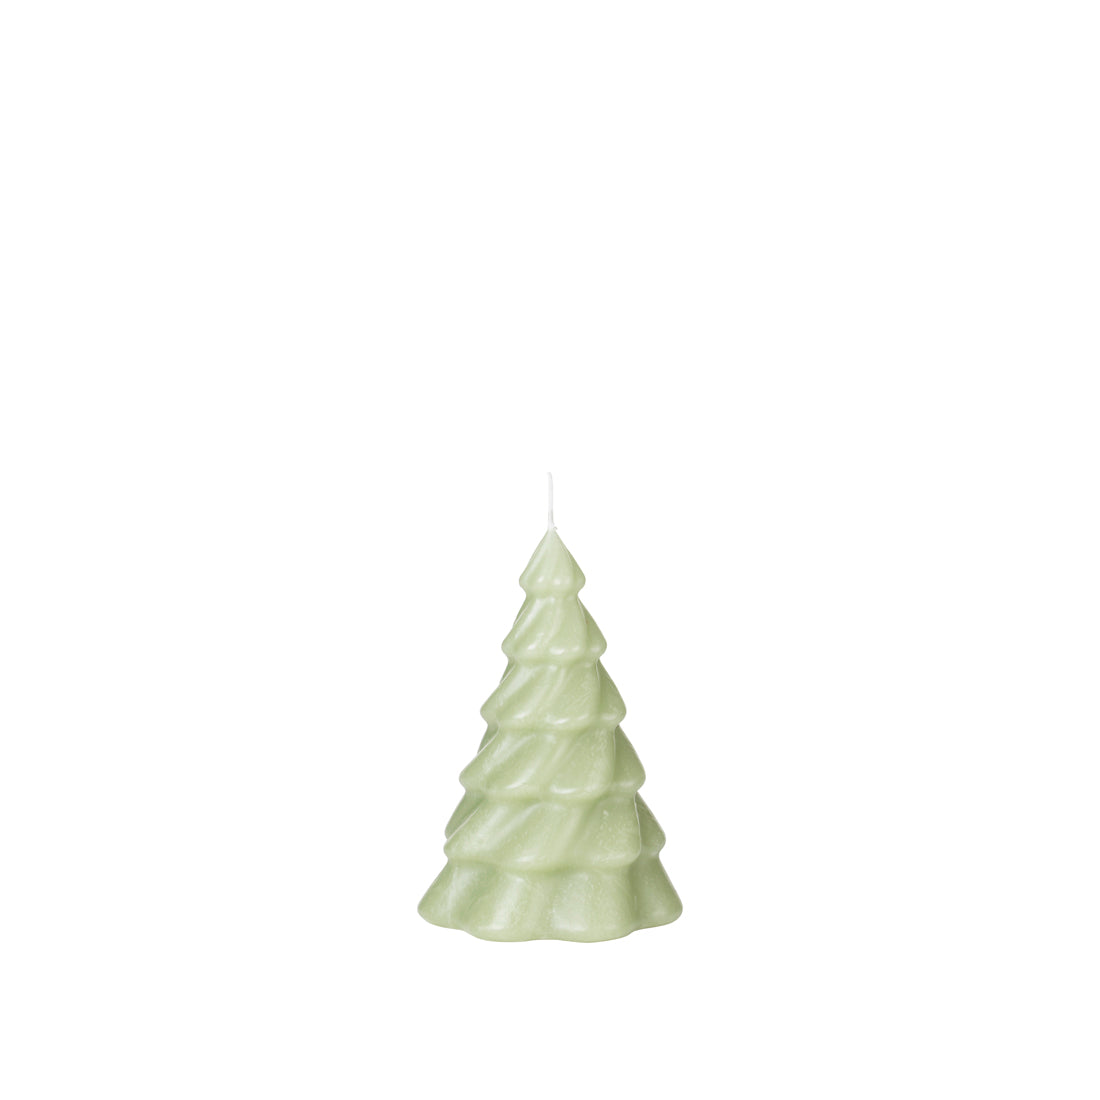 Kerze Weihnachtsbaum Pinus 14 cm - Der karierte Hund®